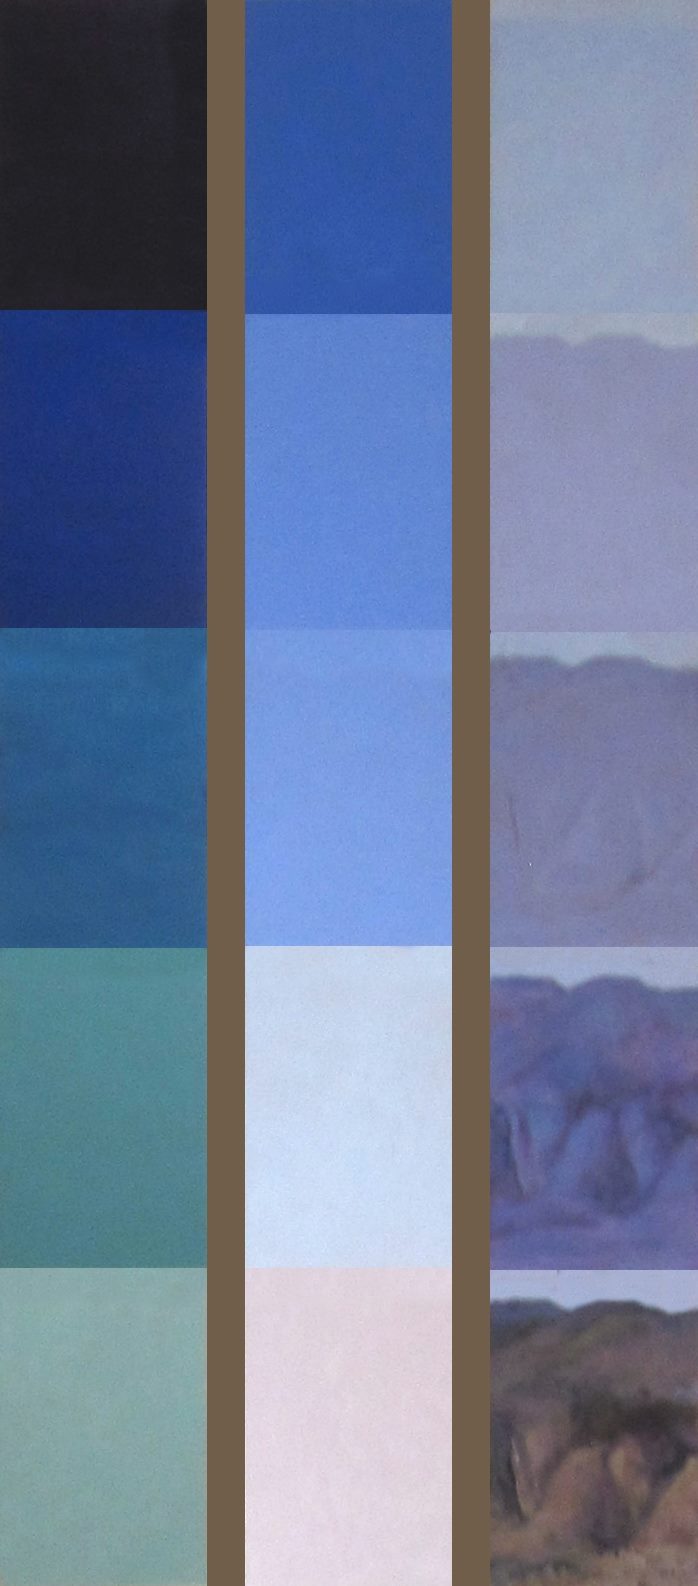 Γιώργος Χατζημιχάλης, Μετρήσεις , ακρυλικό σε ξύλο, τρίπτυχο, 150 x 20 εκ. το καθένα, 2011